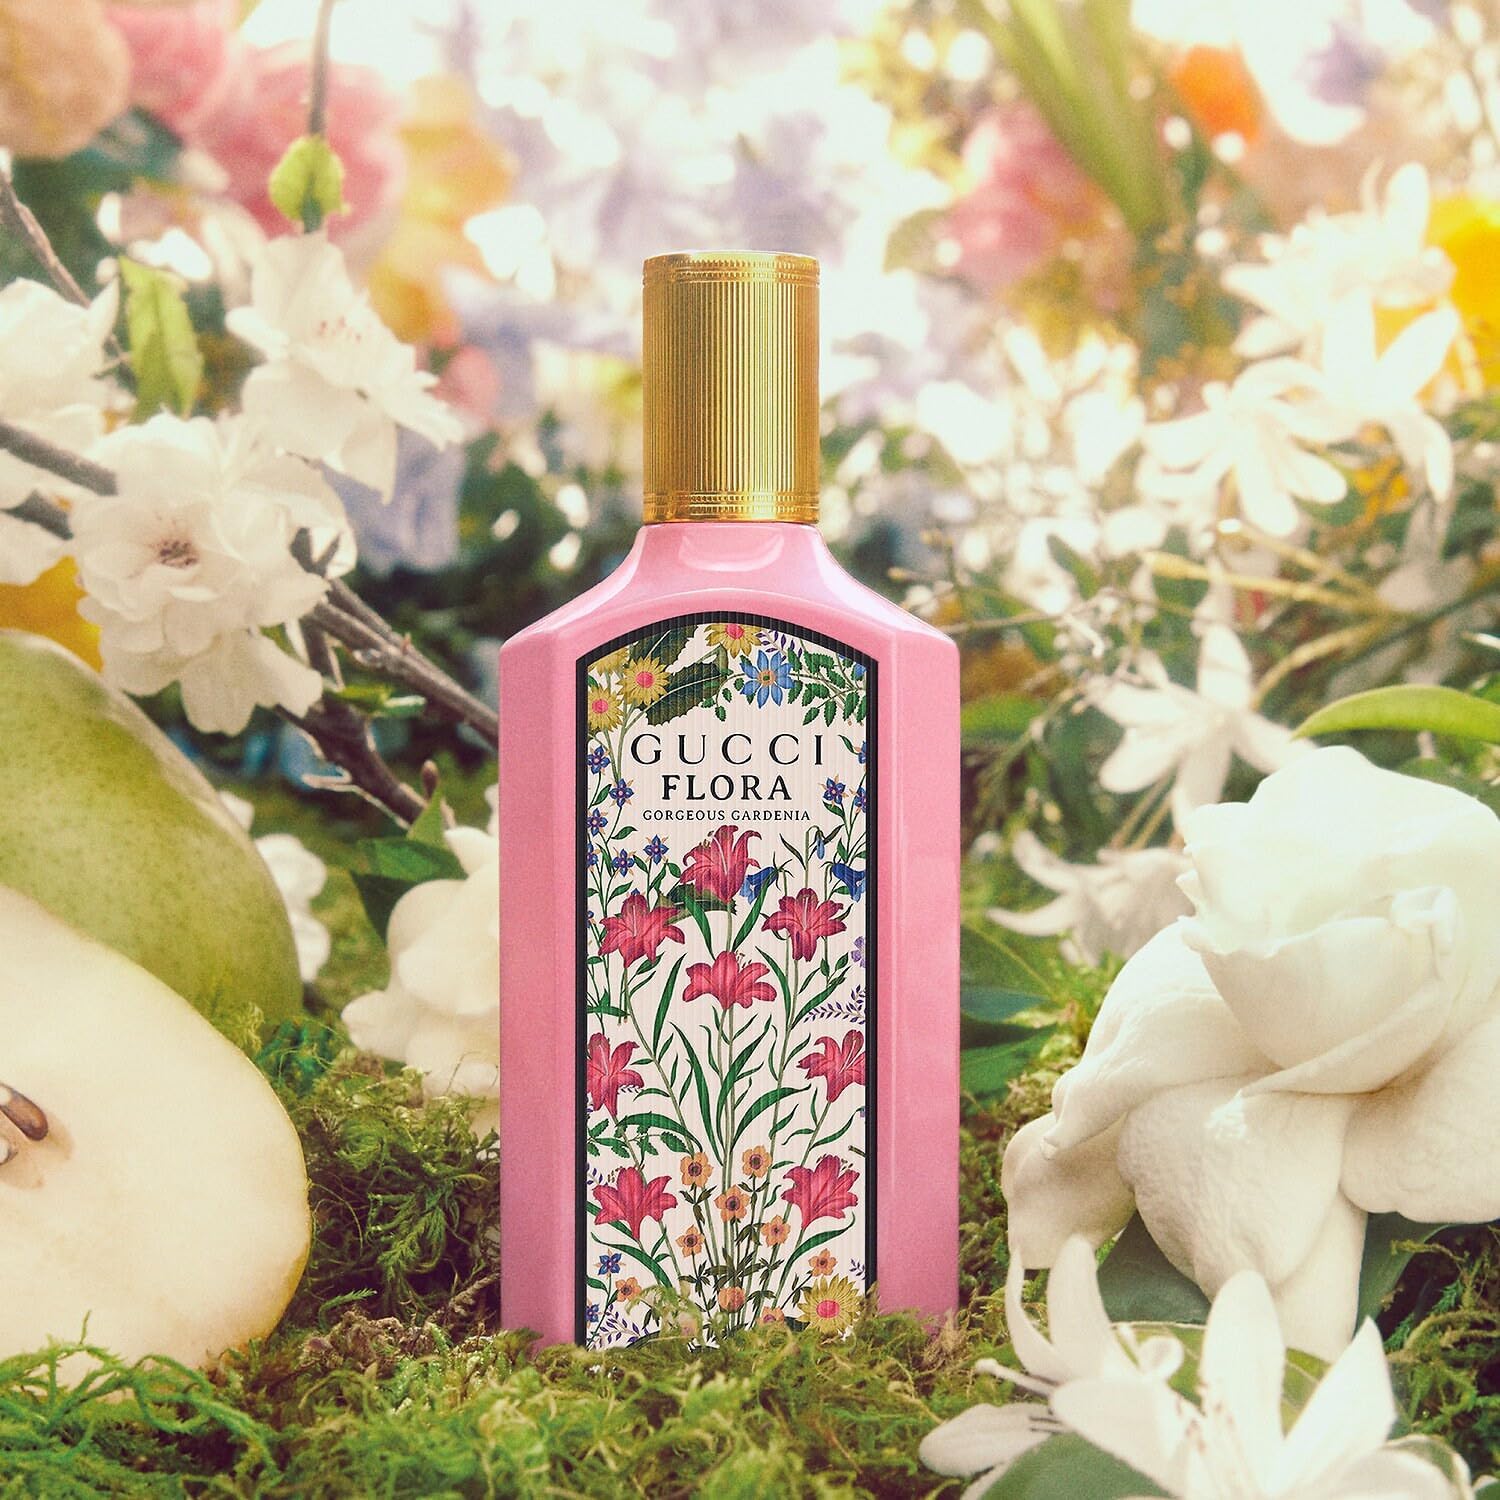 Gucci Flora Gorgeous Gardenia EDP Trio Set | My Perfume Shop Australia